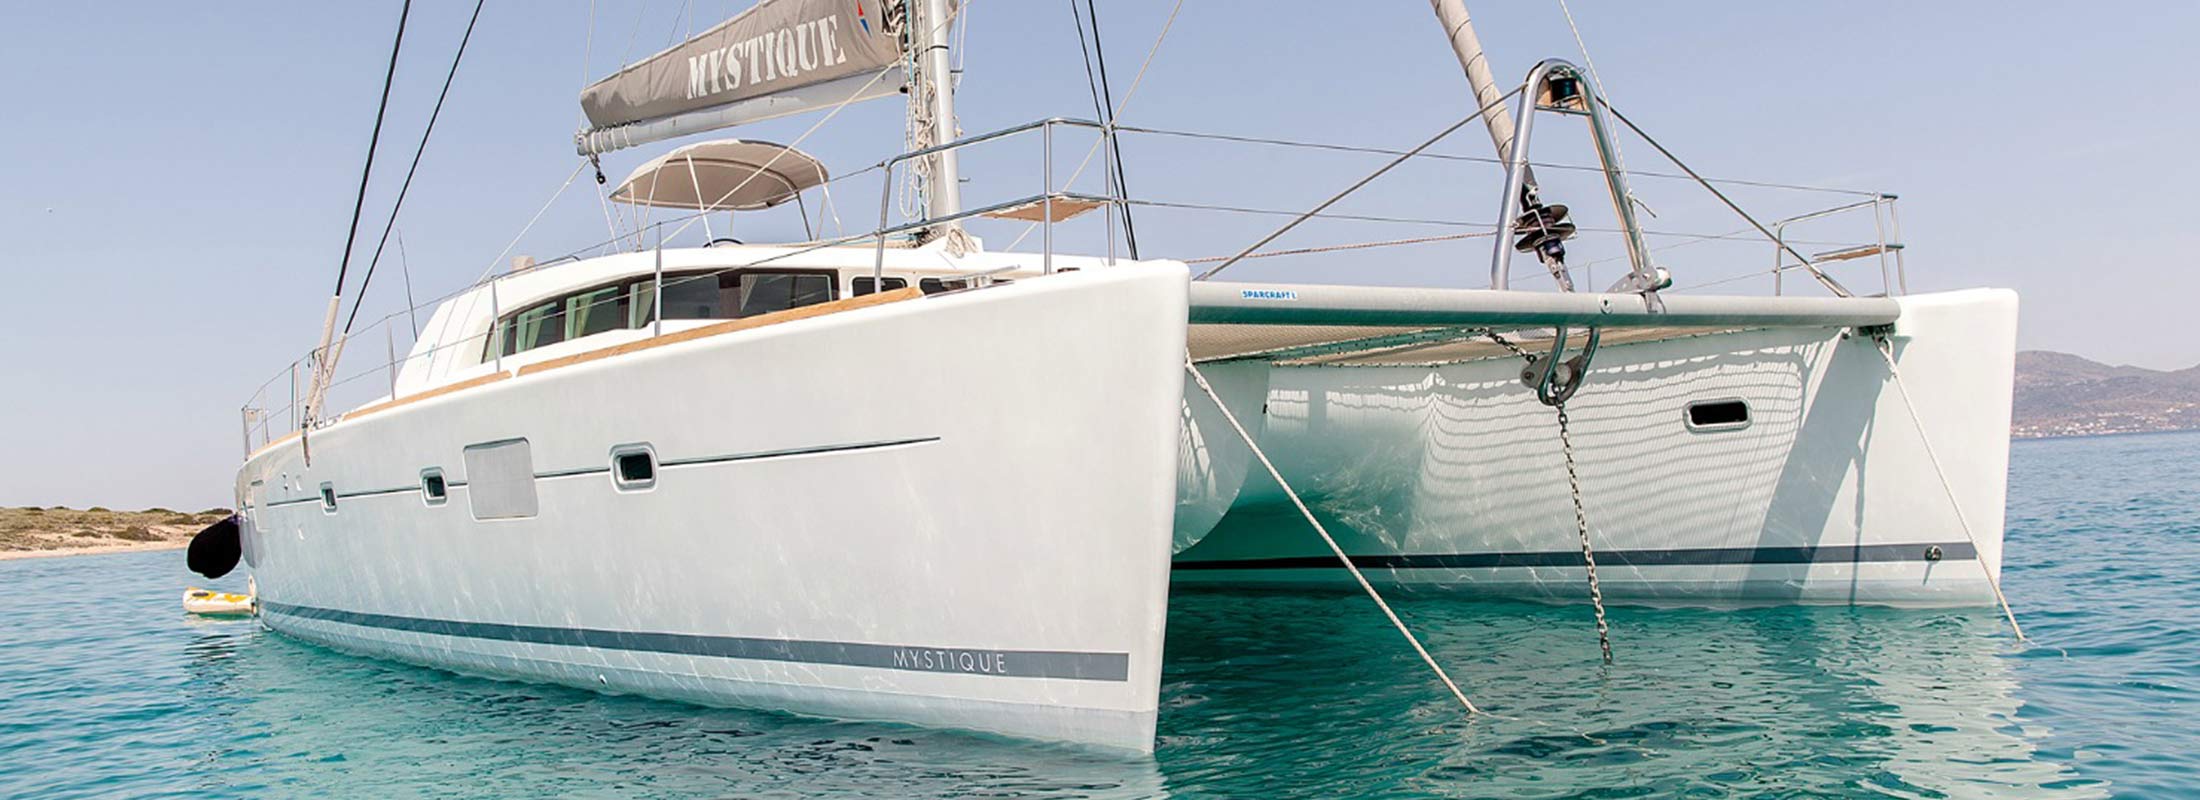 Mystique Sailing Yacht for Charter Mediterranean slider 2